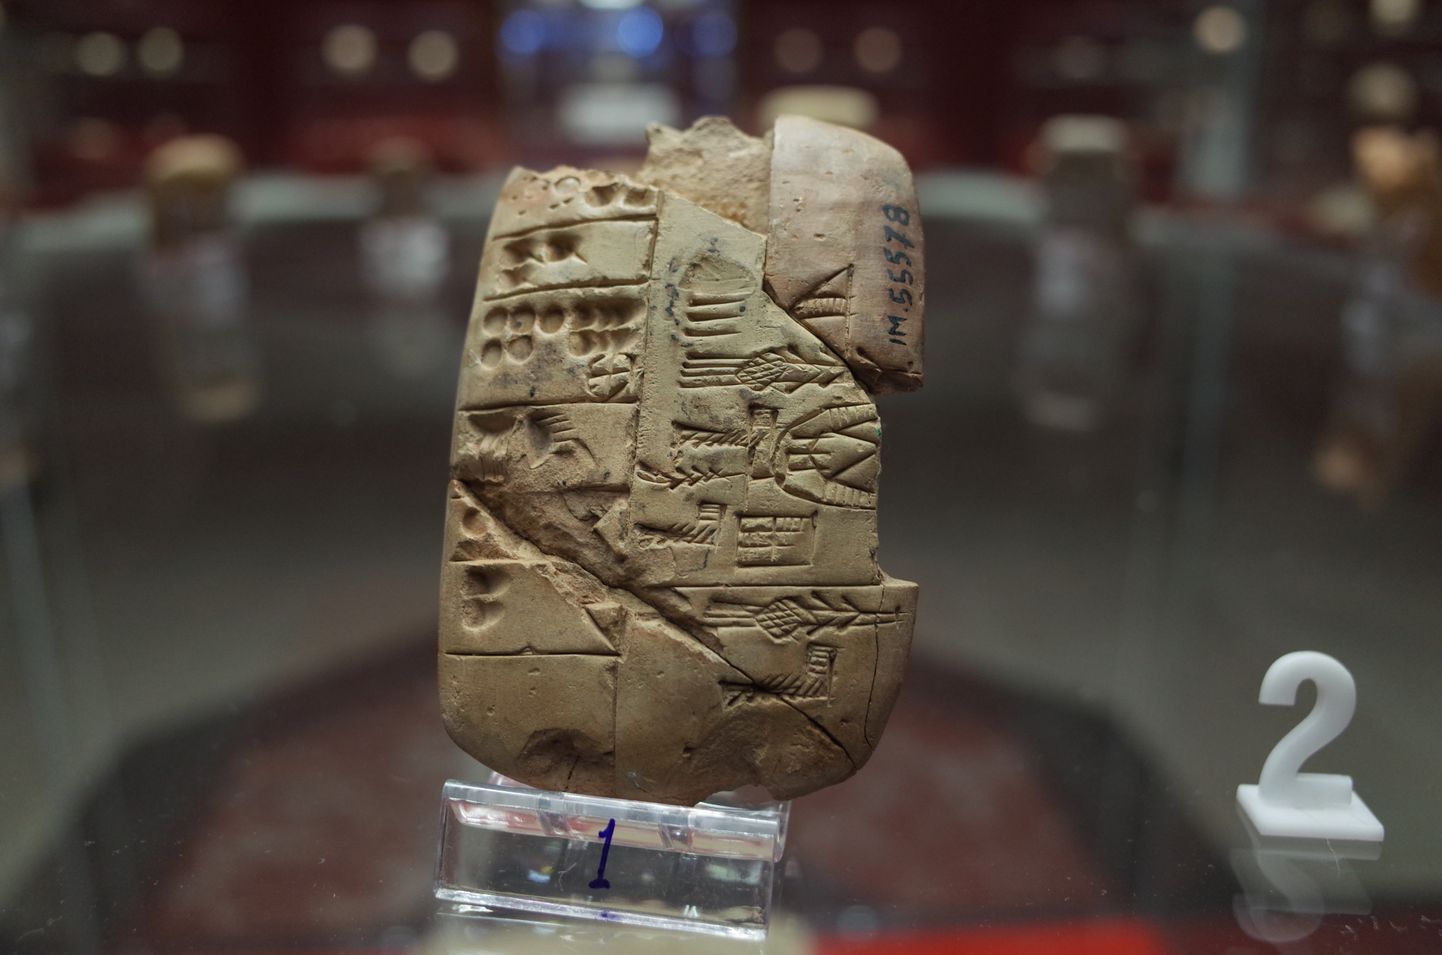 Pildil on Sumeri savikiilkirjatahvel Iraagi muuseumis.